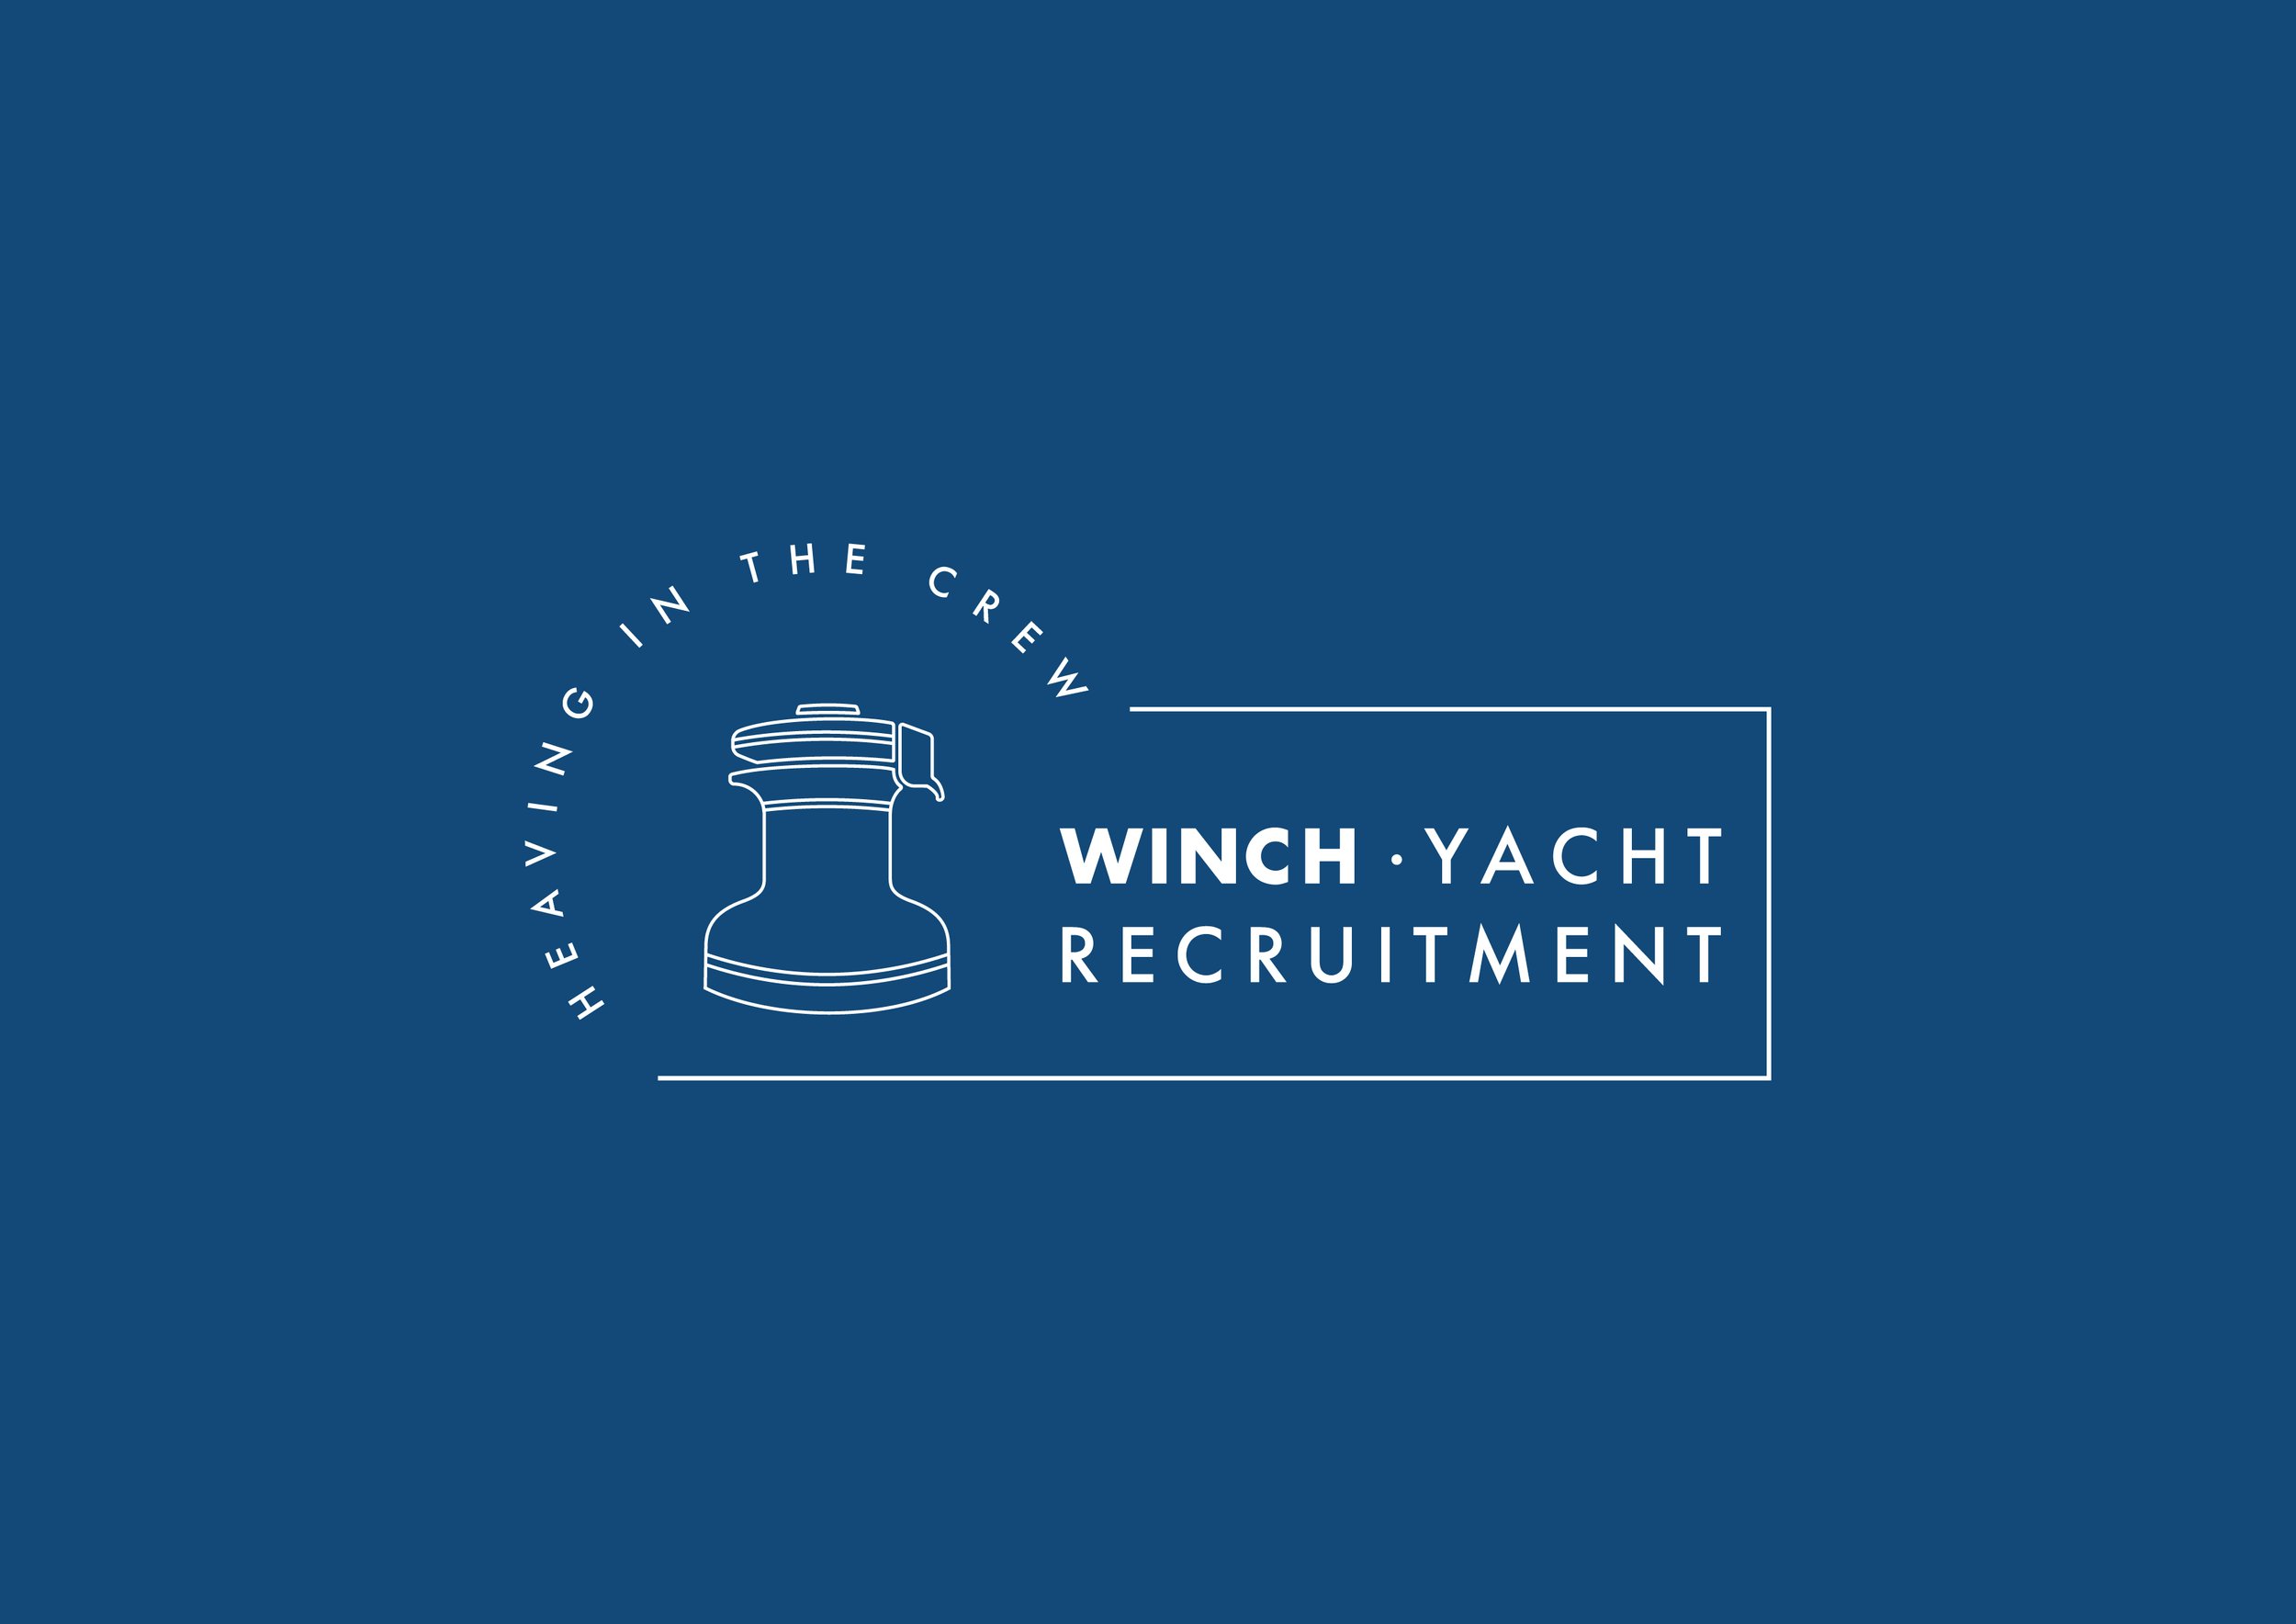 winch-yacht-recruitment-graphic-horizontal.jpg